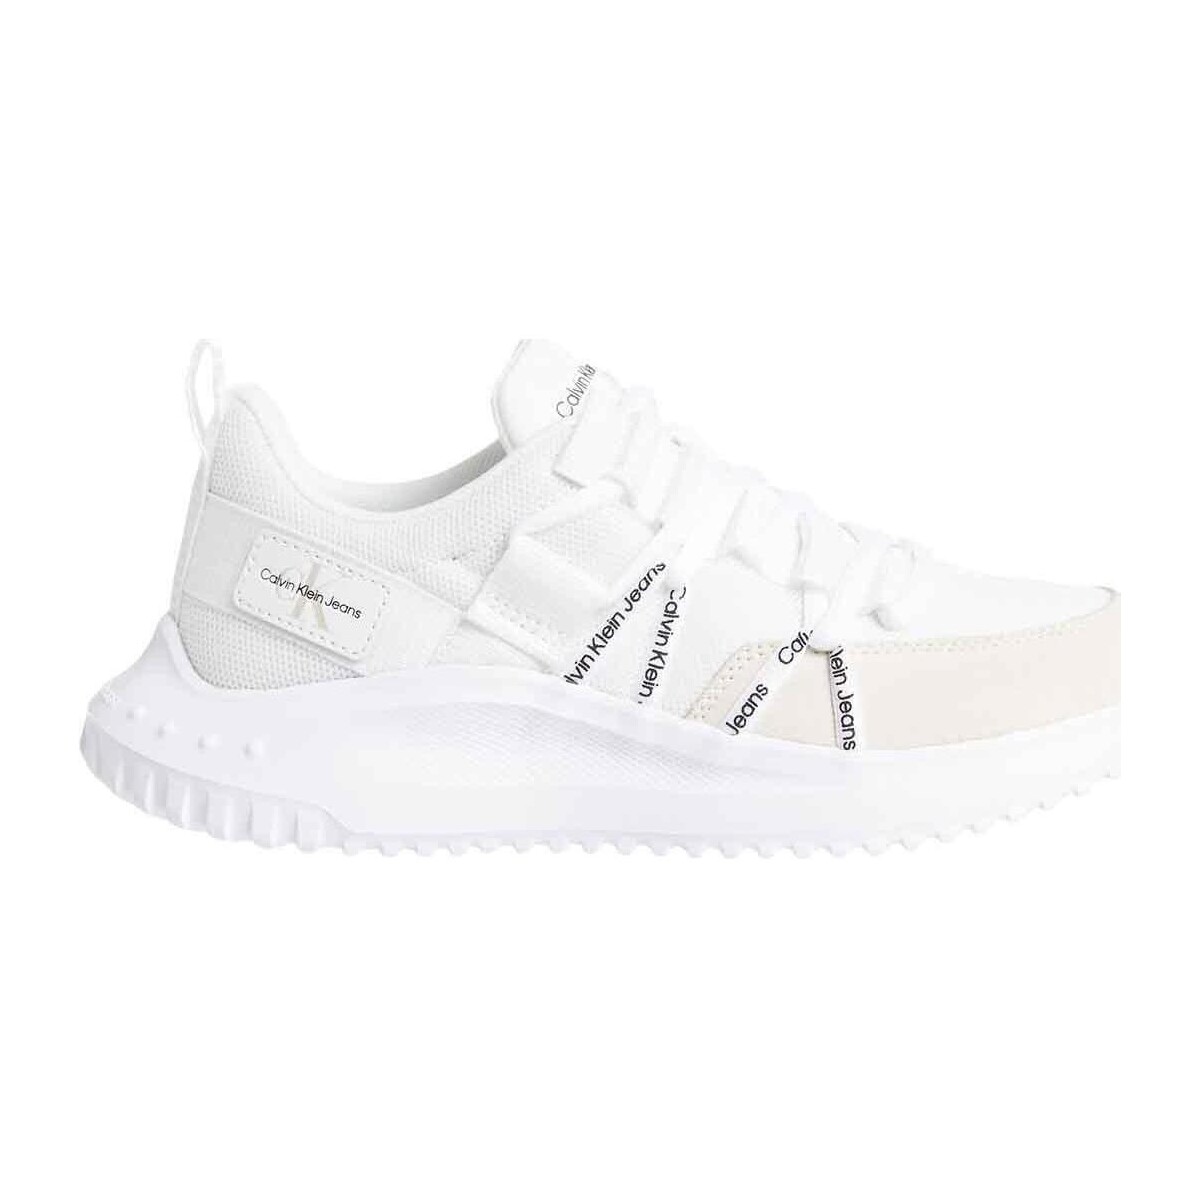 Παπούτσια Γυναίκα Χαμηλά Sneakers Calvin Klein Jeans  Άσπρο